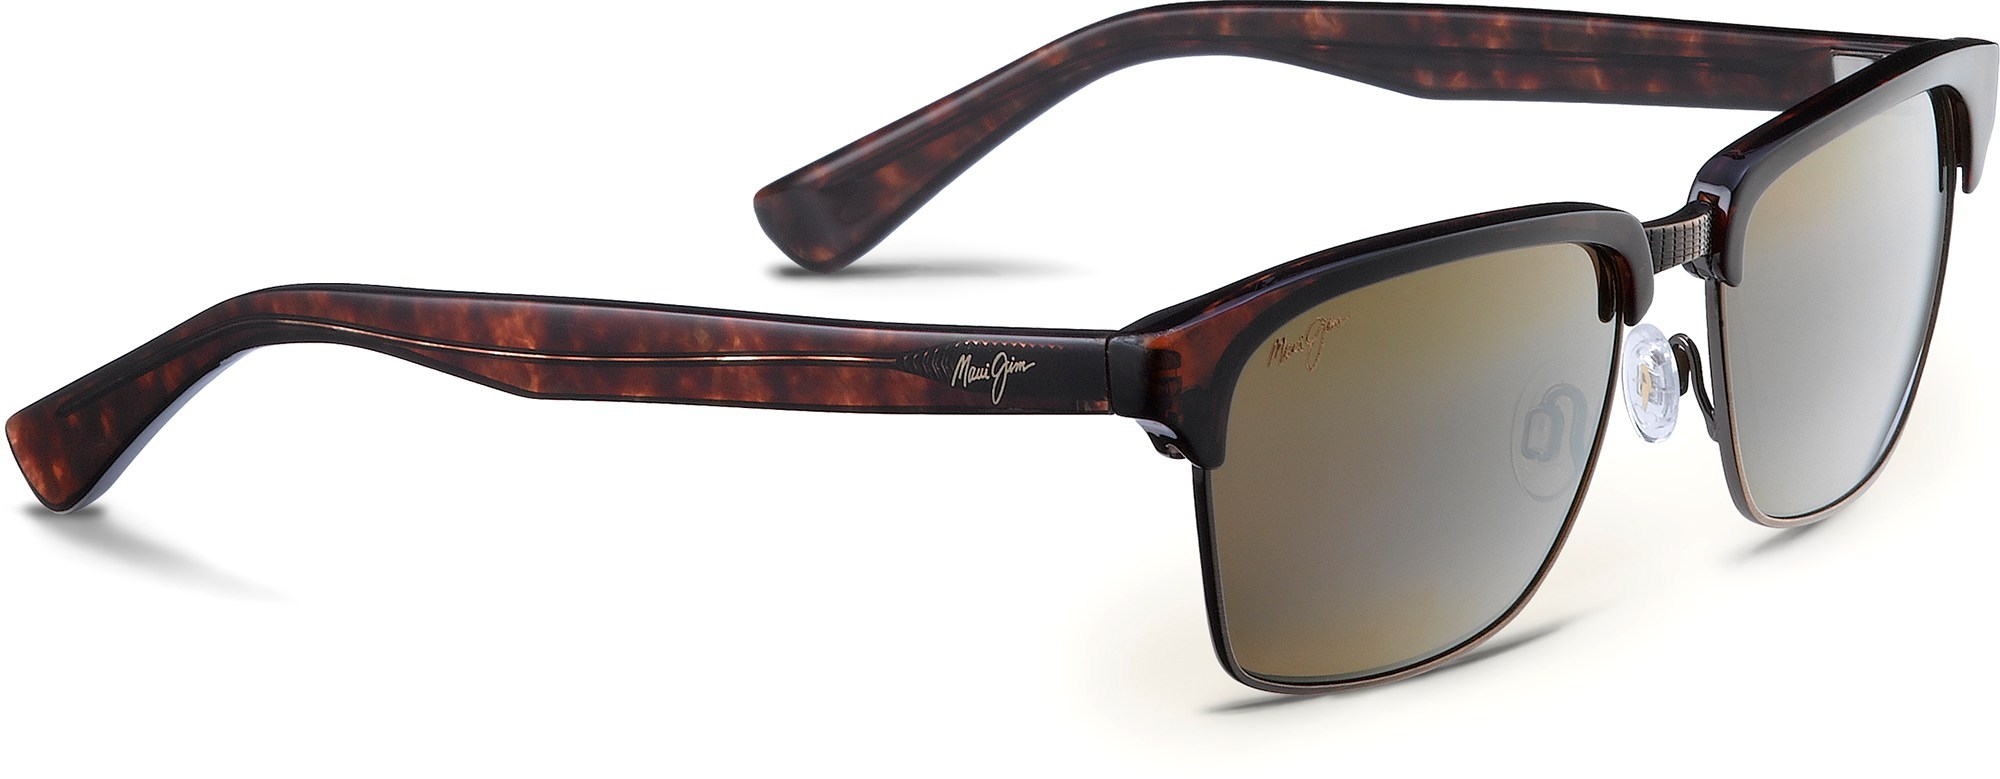 цена Поляризованные солнцезащитные очки Kawika — мужские Maui Jim, зеленый